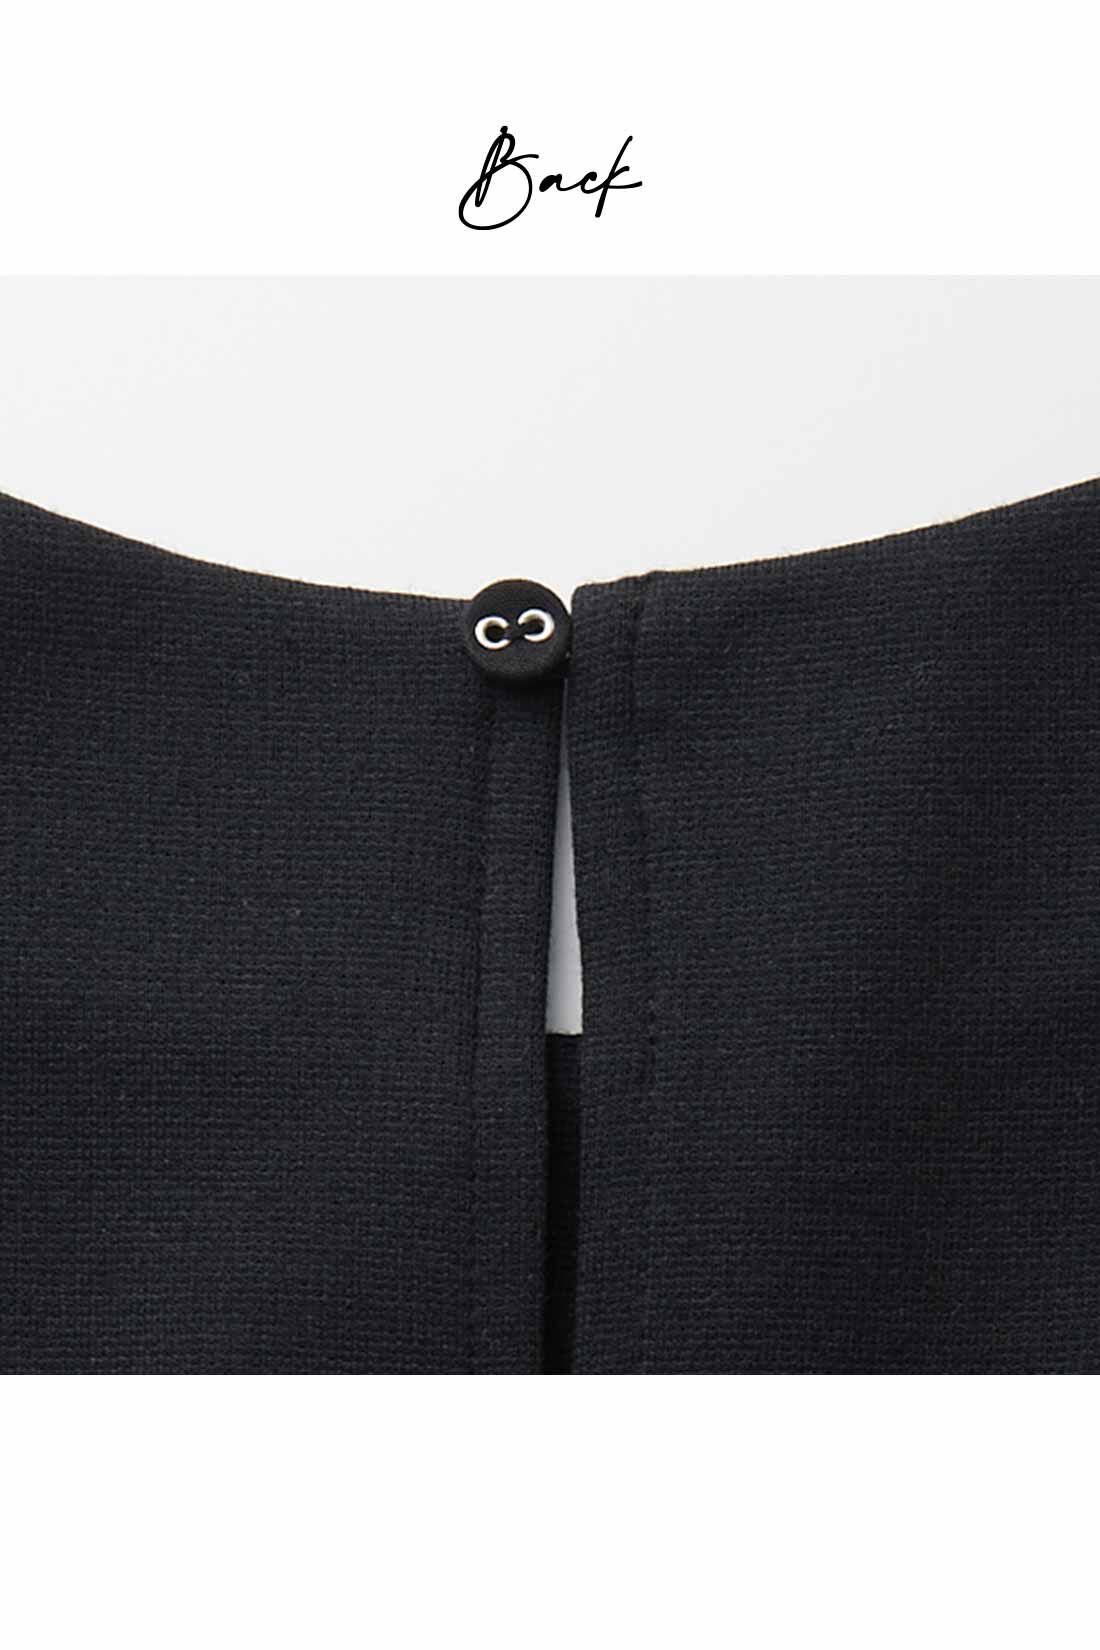 IEDIT|IEDIT[イディット]　小森美穂子さんコラボ カットソーポンチ素材と布はくドッキングのきれい見えワンピース〈ブラック〉|衿ぐりは後ろに涙開きをほどこしたコンパクトな作りのクルーネック。